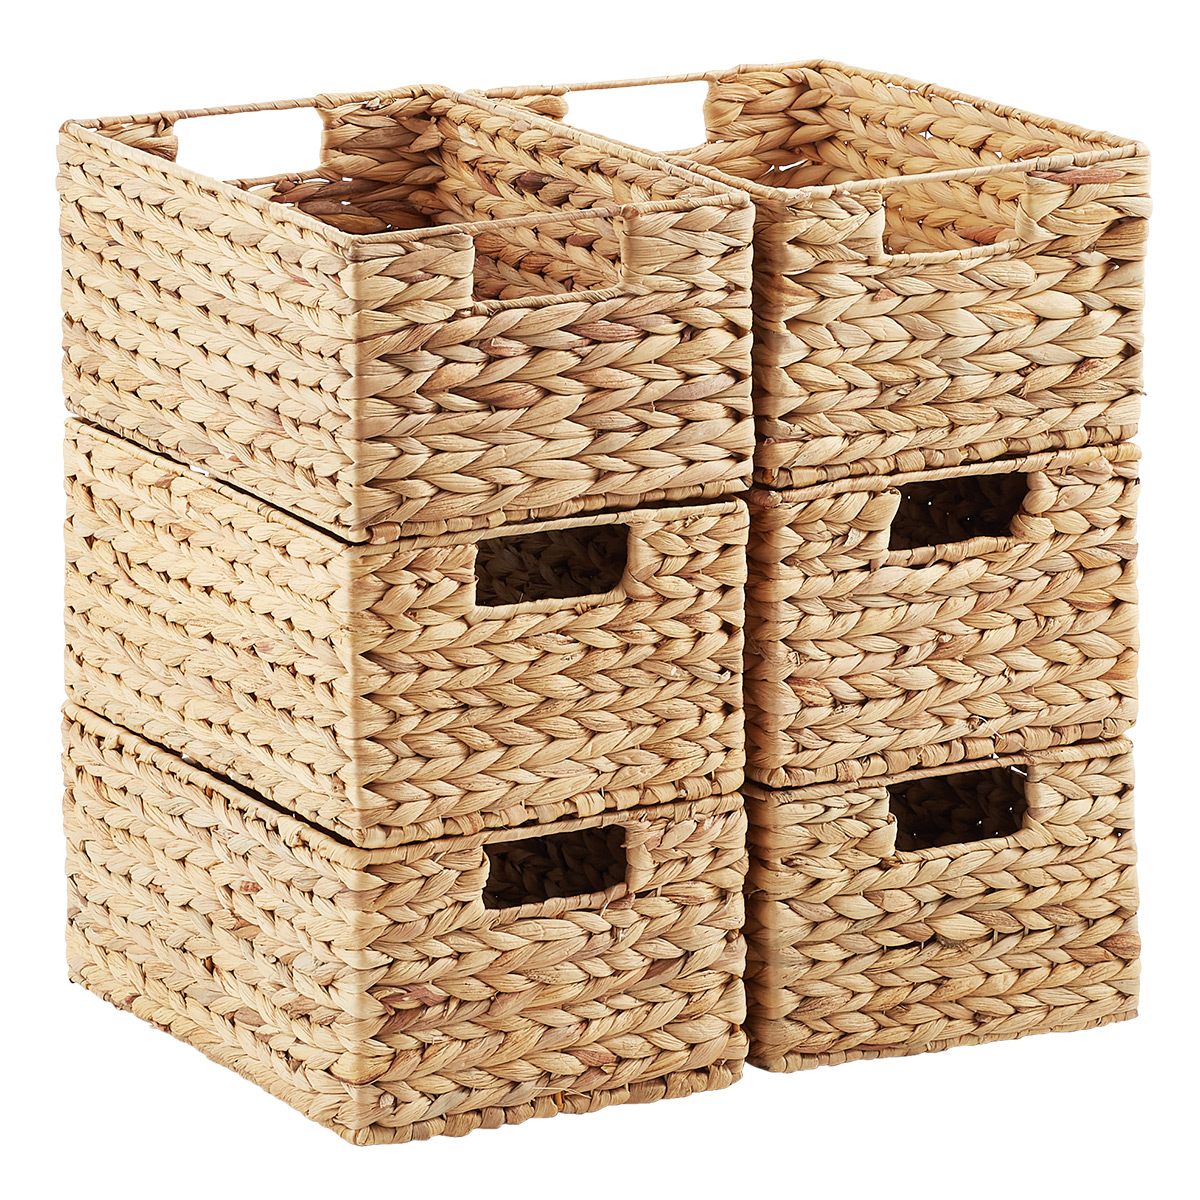 Handmade Rattan Storage Container Storage Basket Wooden Storage Basket with I3N4 